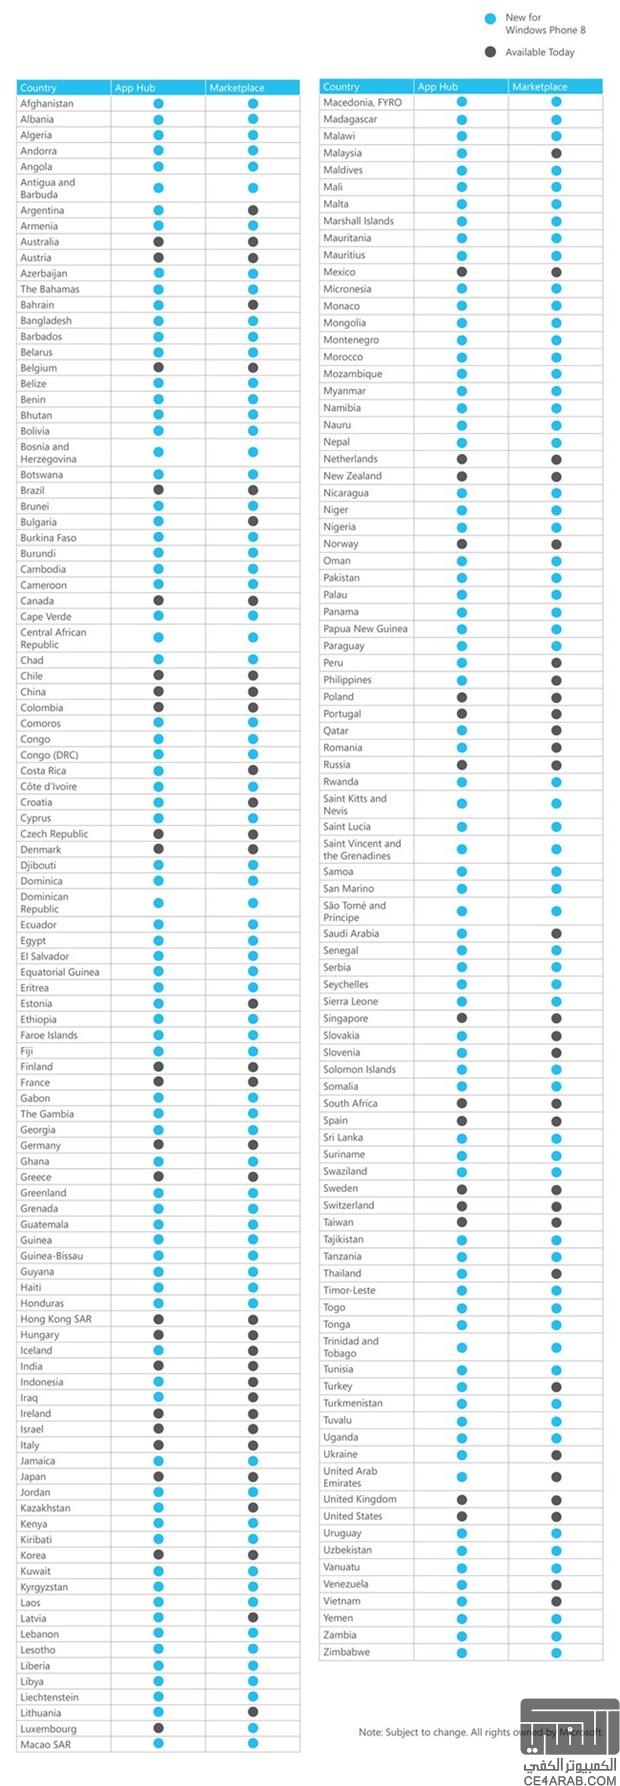 متجر الويندوزفون 8 سيدعم 180 بلد واليكم القائمة